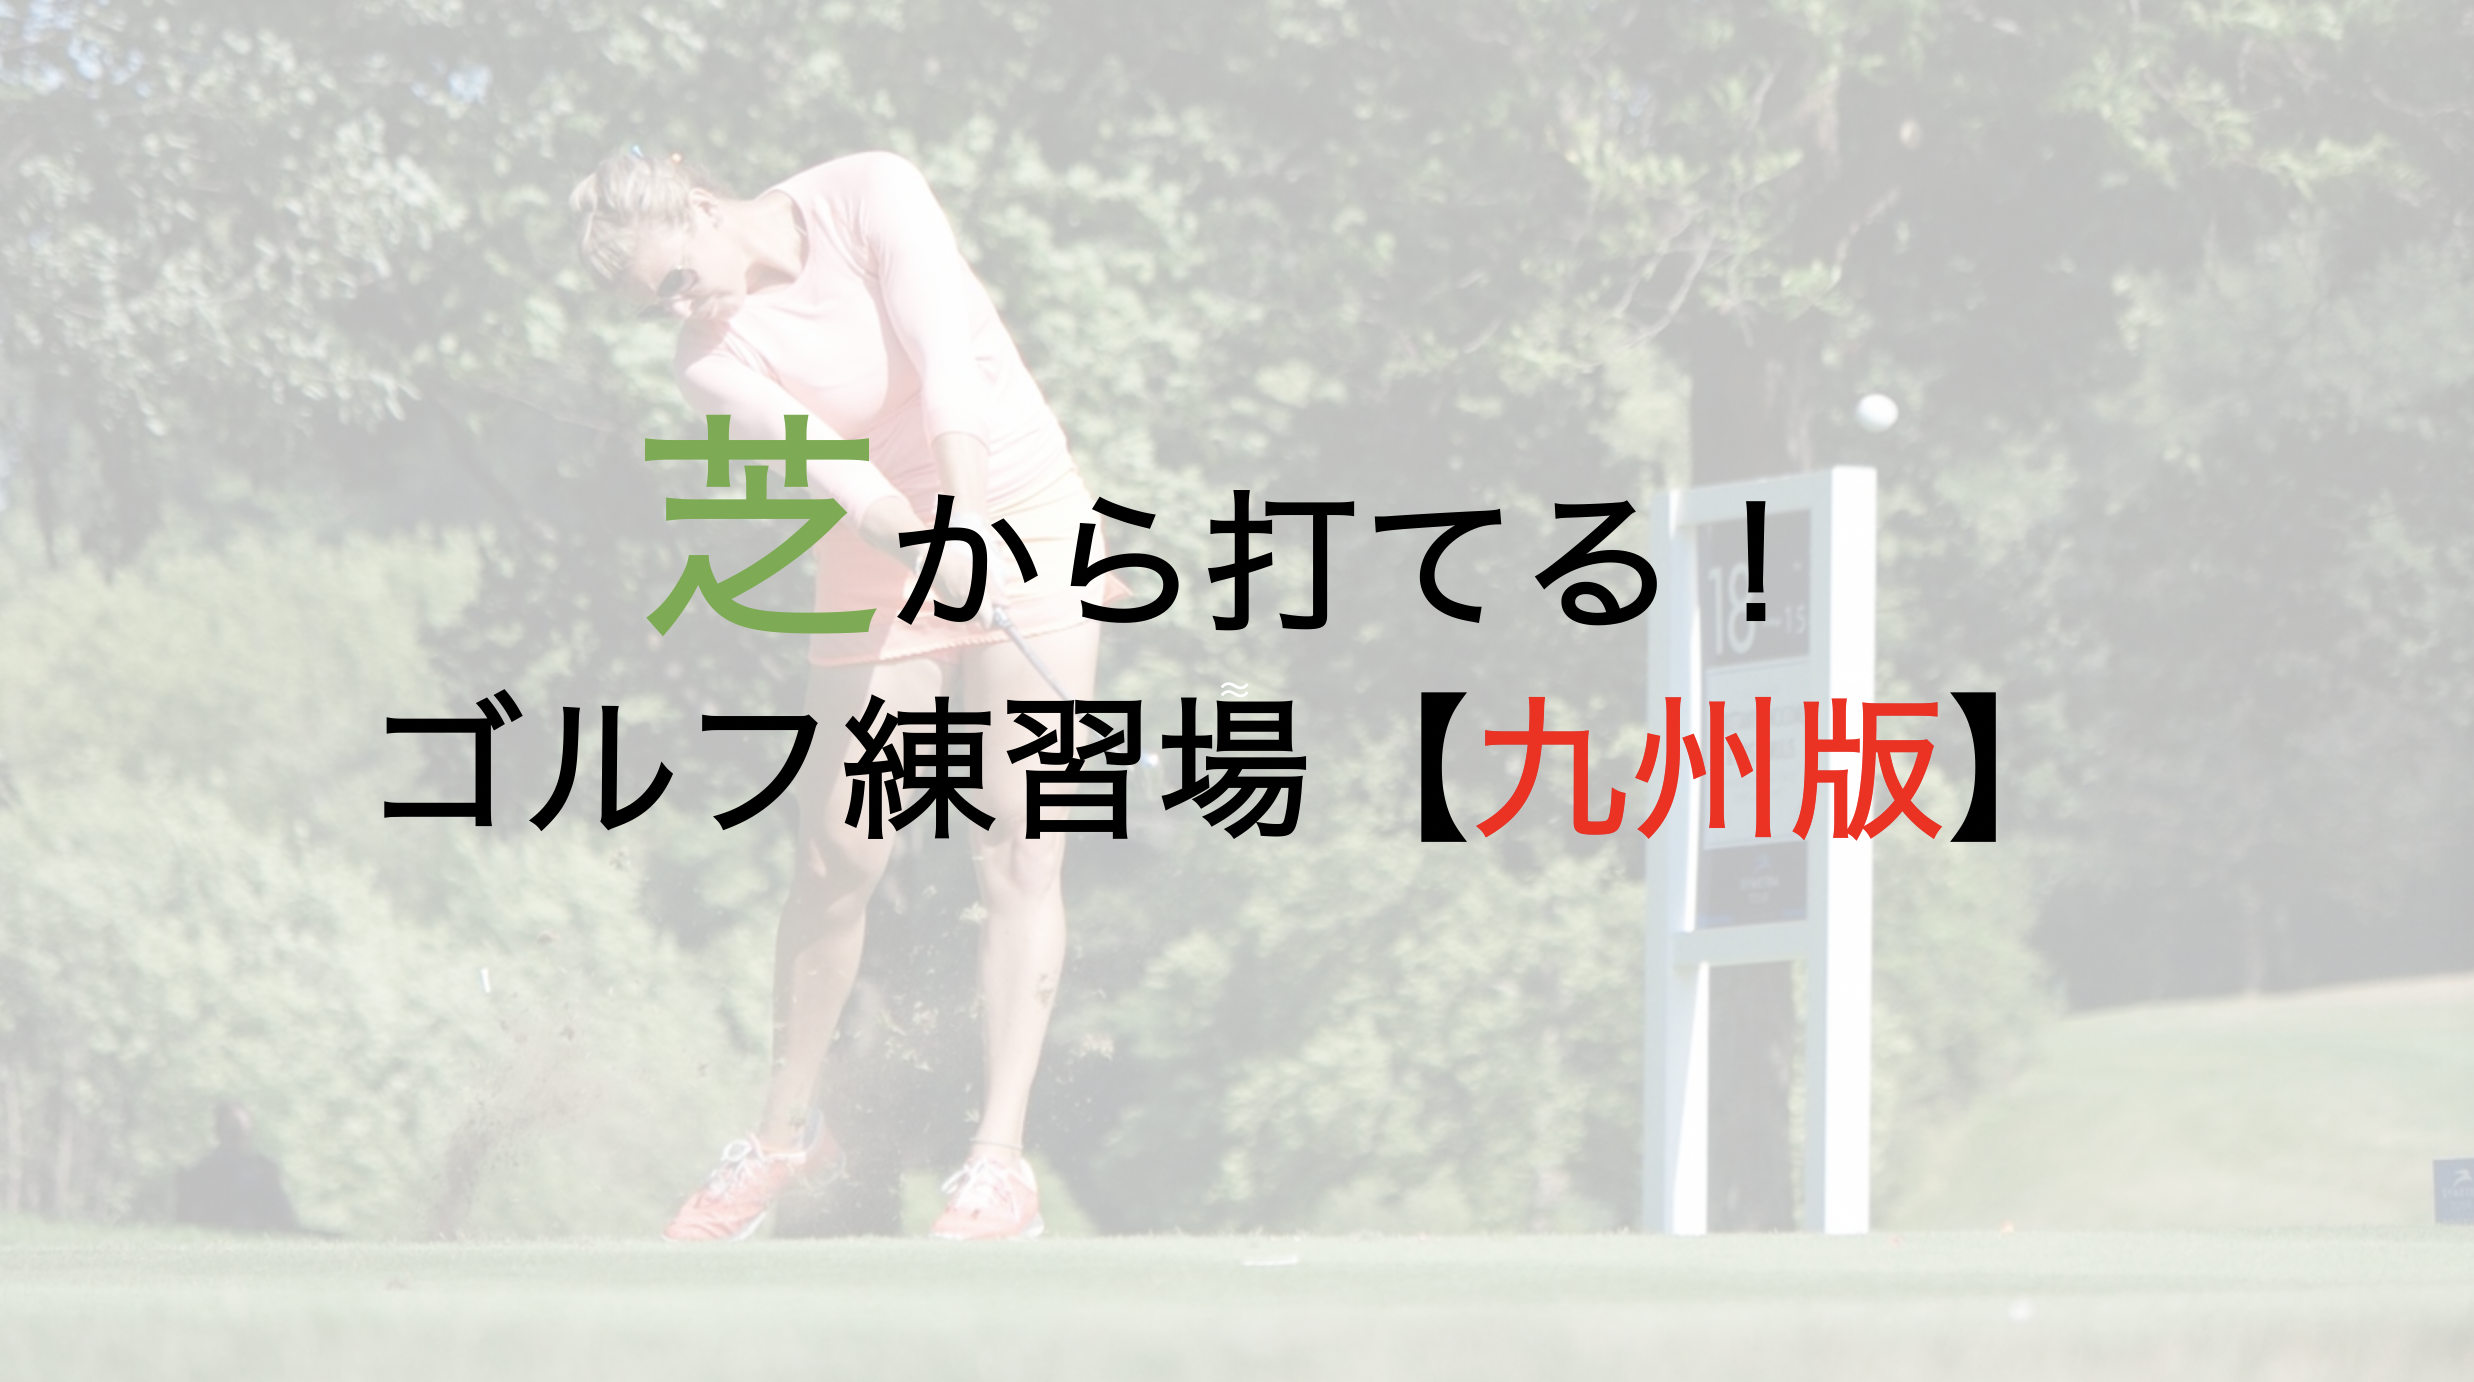 マットではなく芝から打てるゴルフ練習場【九州版】